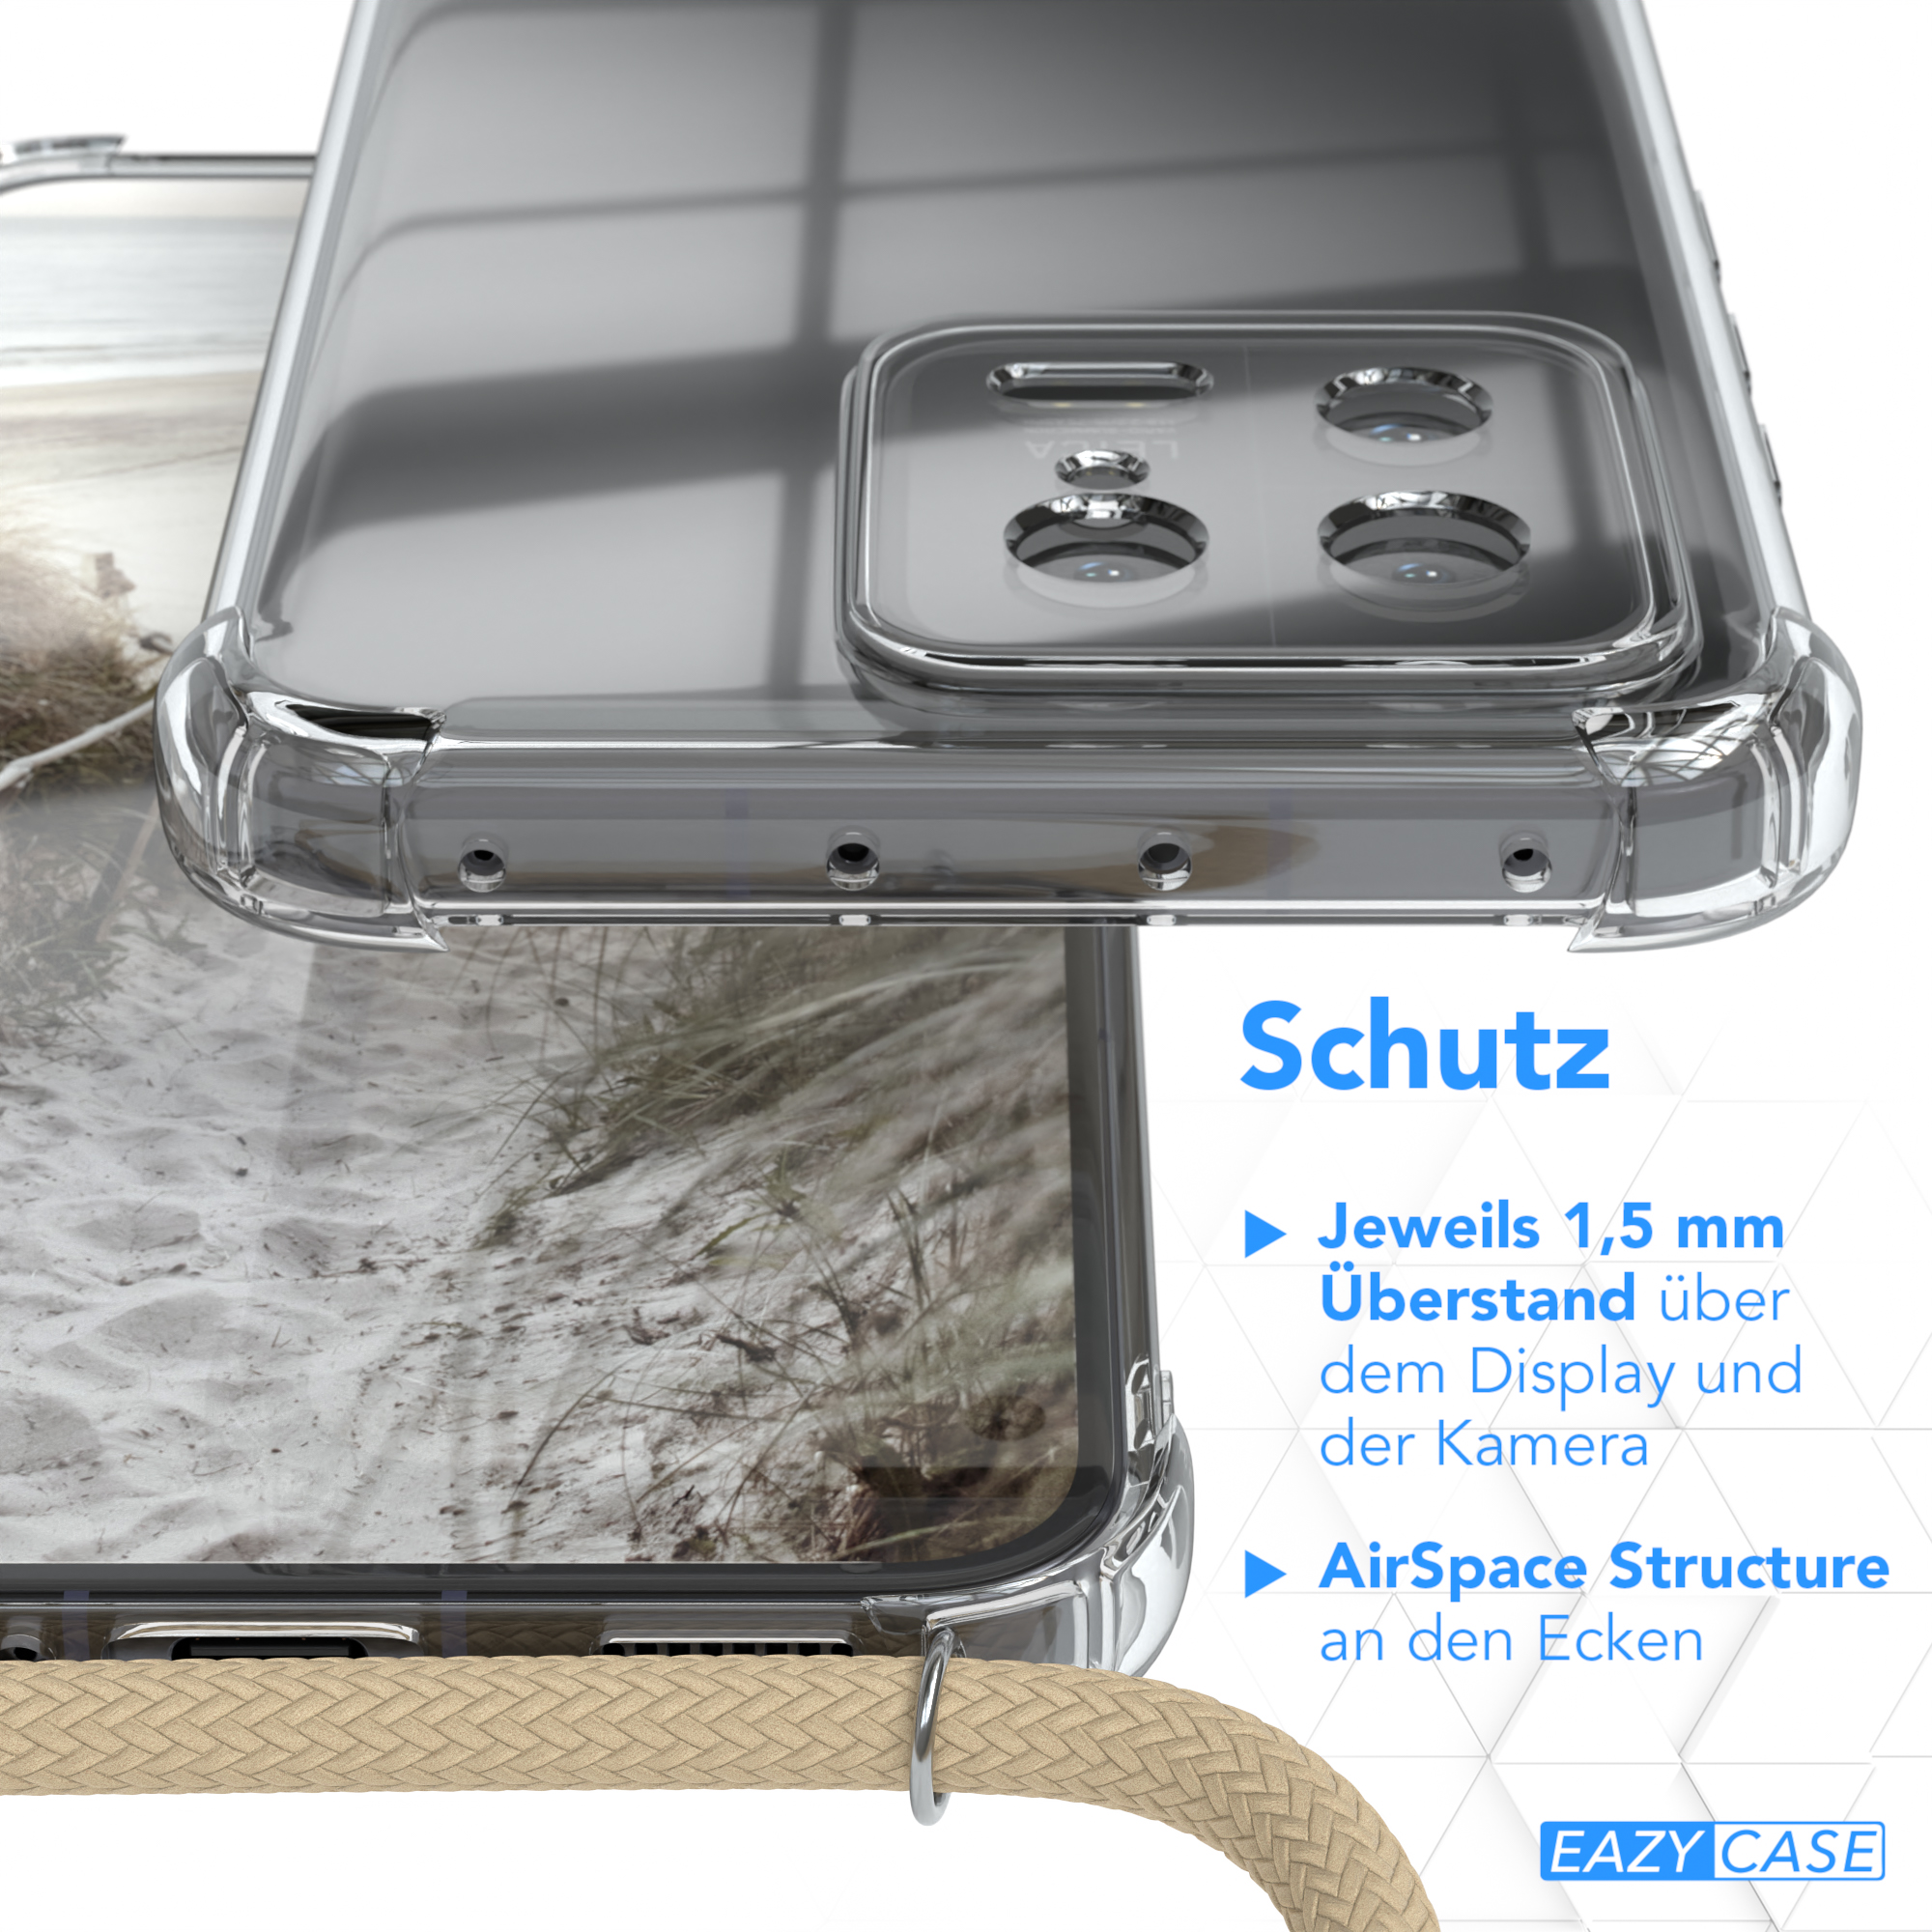 Clear Xiaomi, CASE mit Umhängeband, EAZY Taupe Umhängetasche, 13, Beige Cover